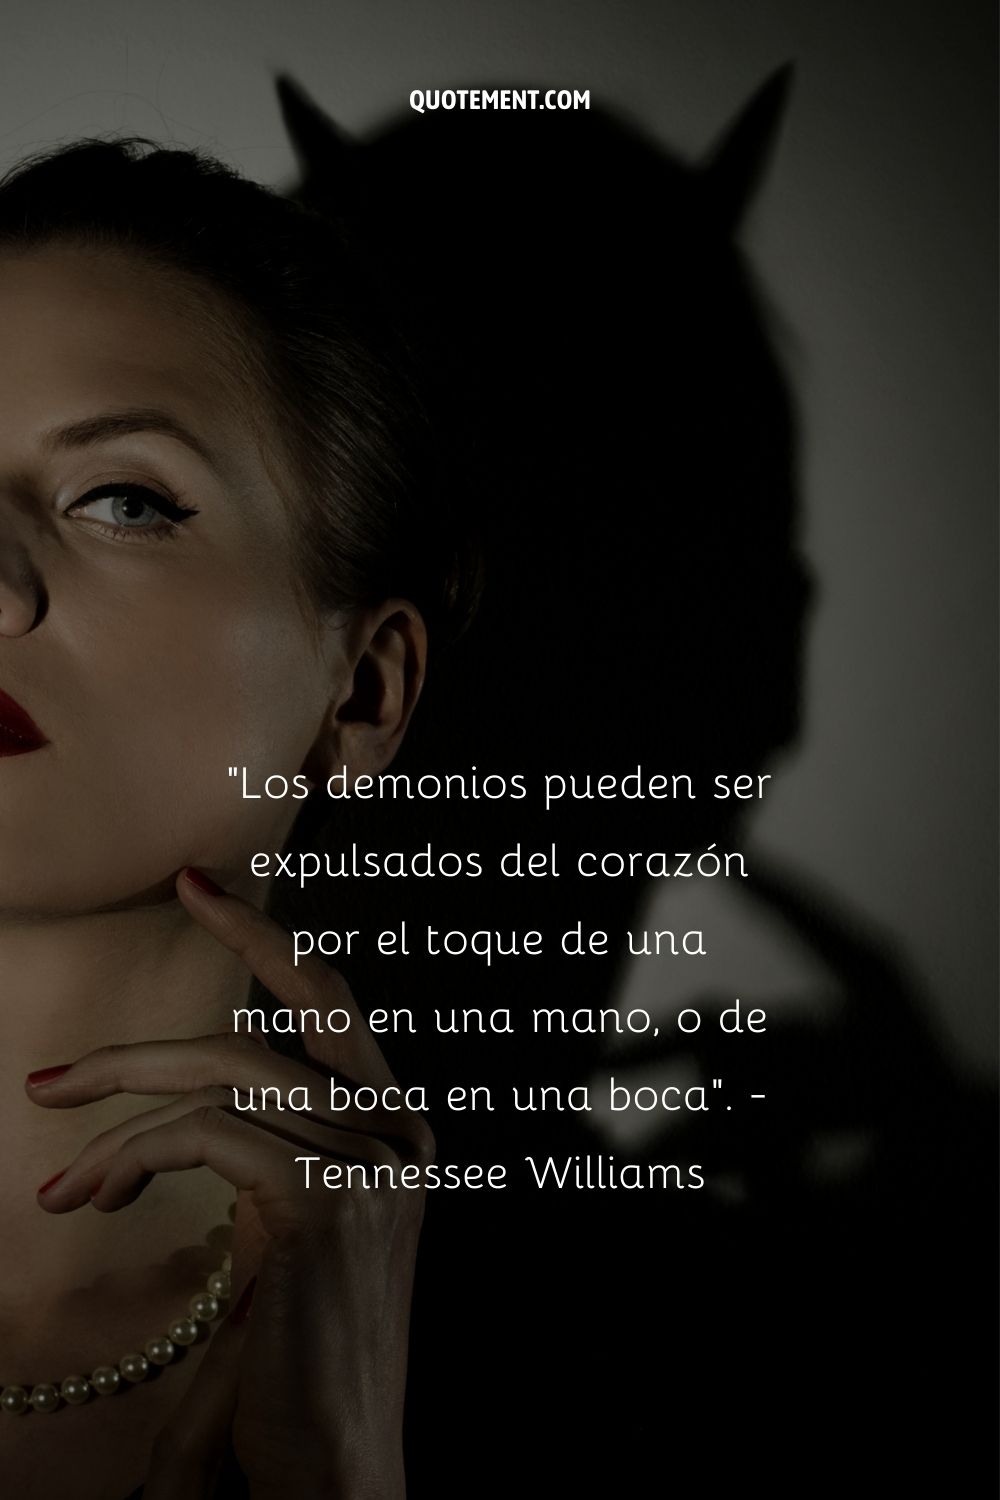 "Los demonios pueden ser expulsados del corazón por el toque de una mano en una mano, o de una boca en una boca". - Tennessee Williams